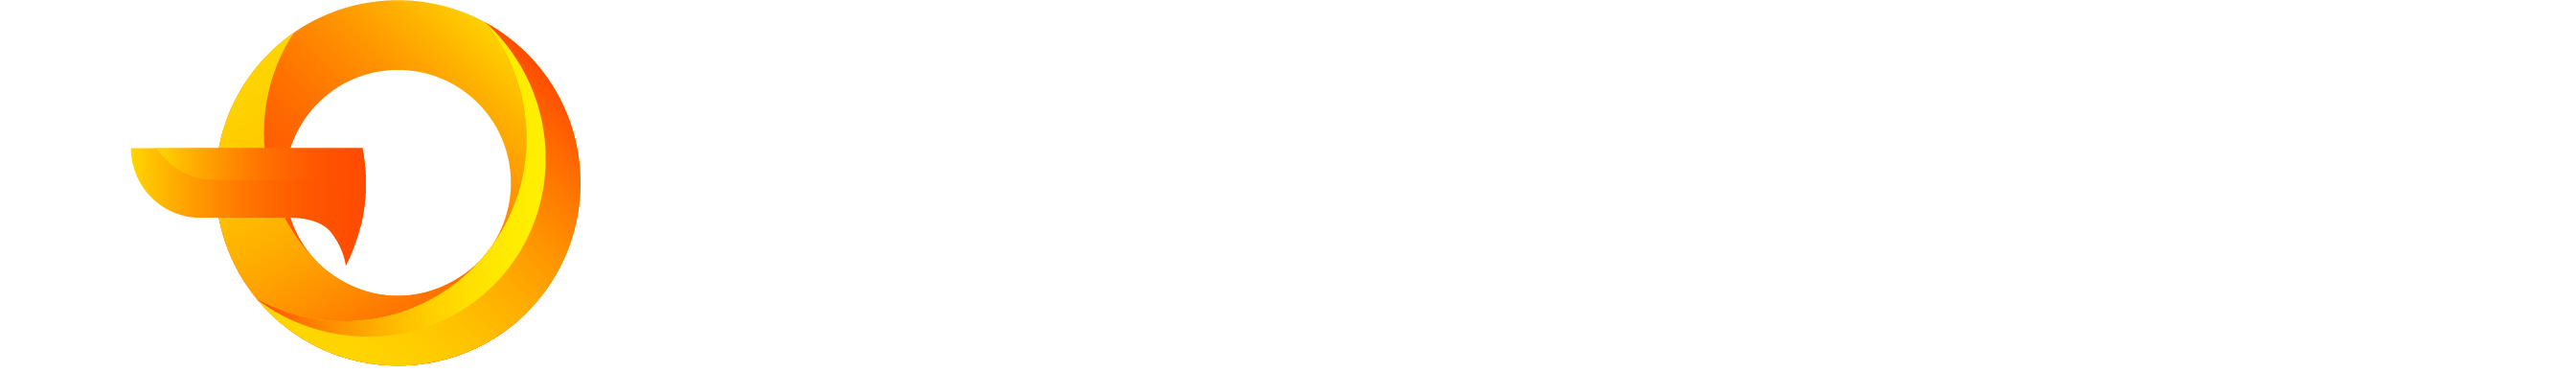 go-ntv-cable-logo